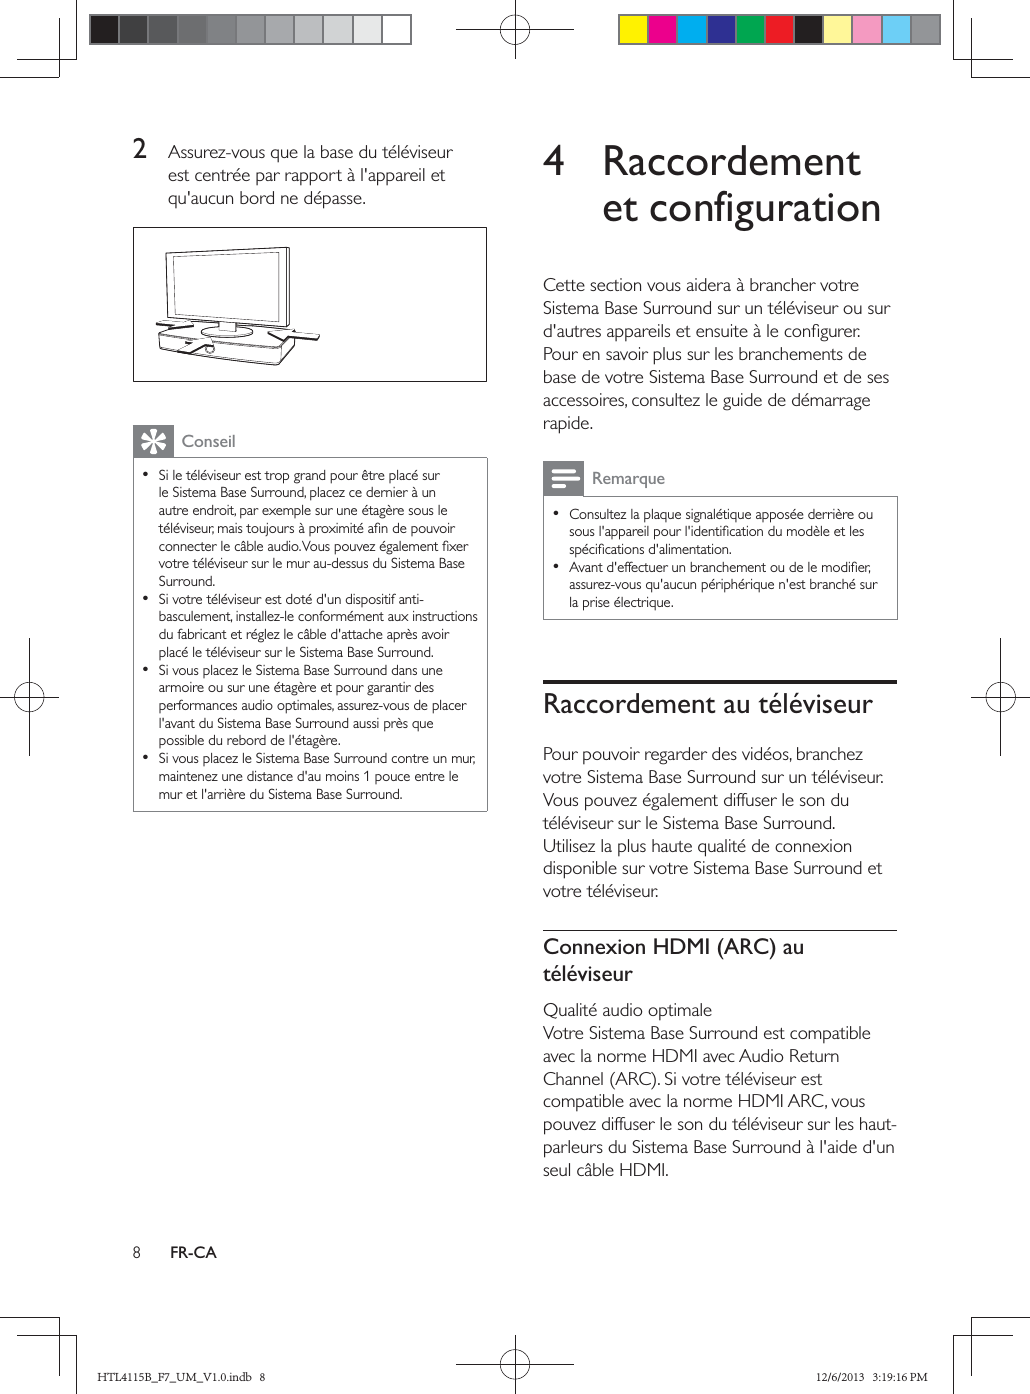 FR-CA2   Conseil    4 Raccordement et configurationRemarque  Raccordement au téléviseurConnexion HDMI (ARC) au téléviseurHTL4115B_F7_UM_V1.0.indb   8 12/6/2013   3:19:16 PM